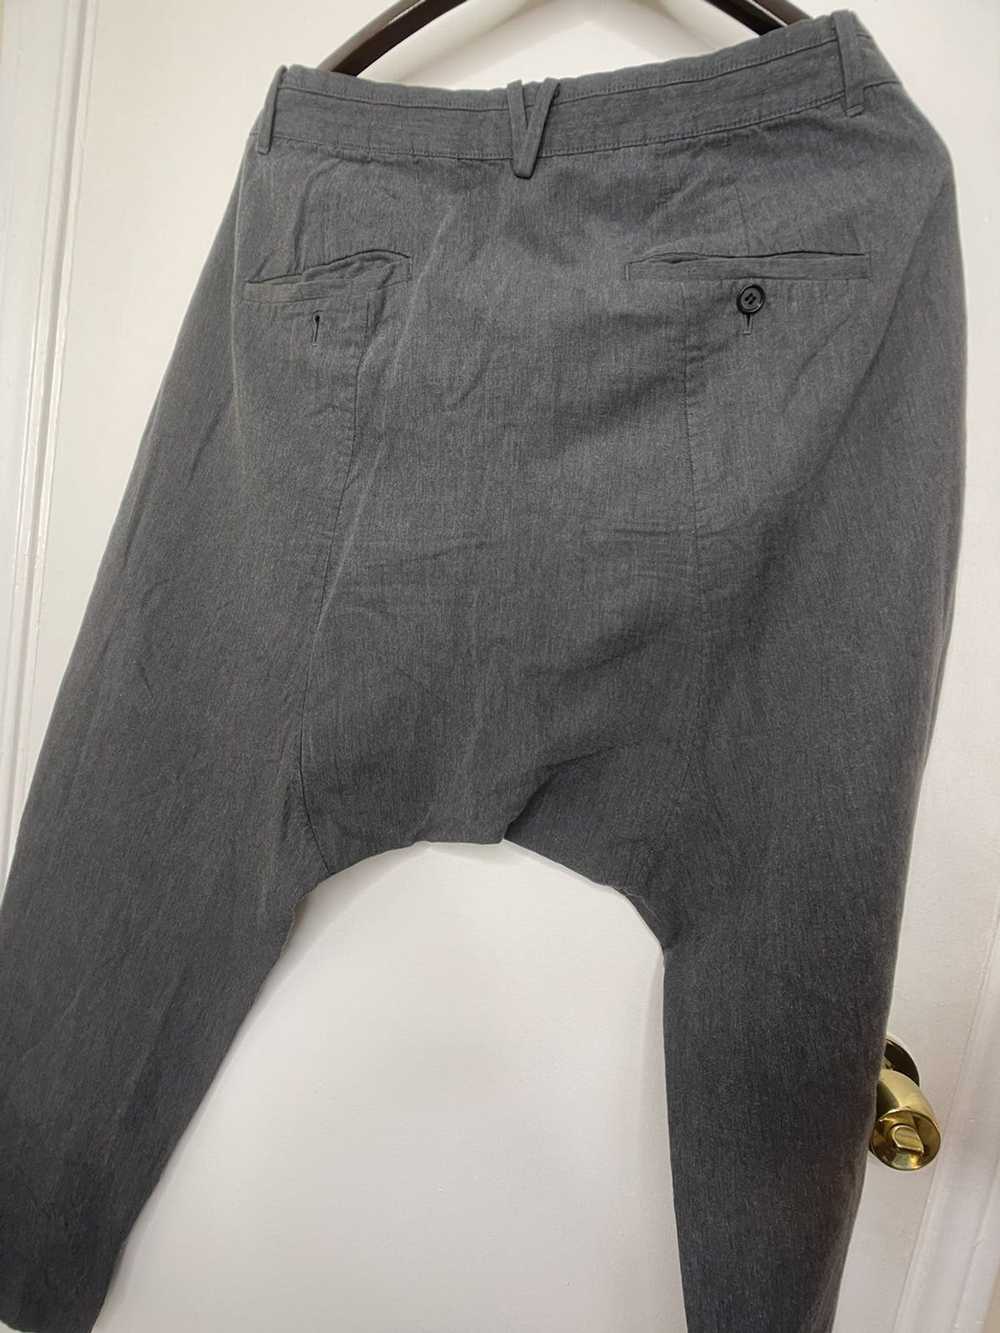 Allsaints Harem cut trousers (pants) - image 9